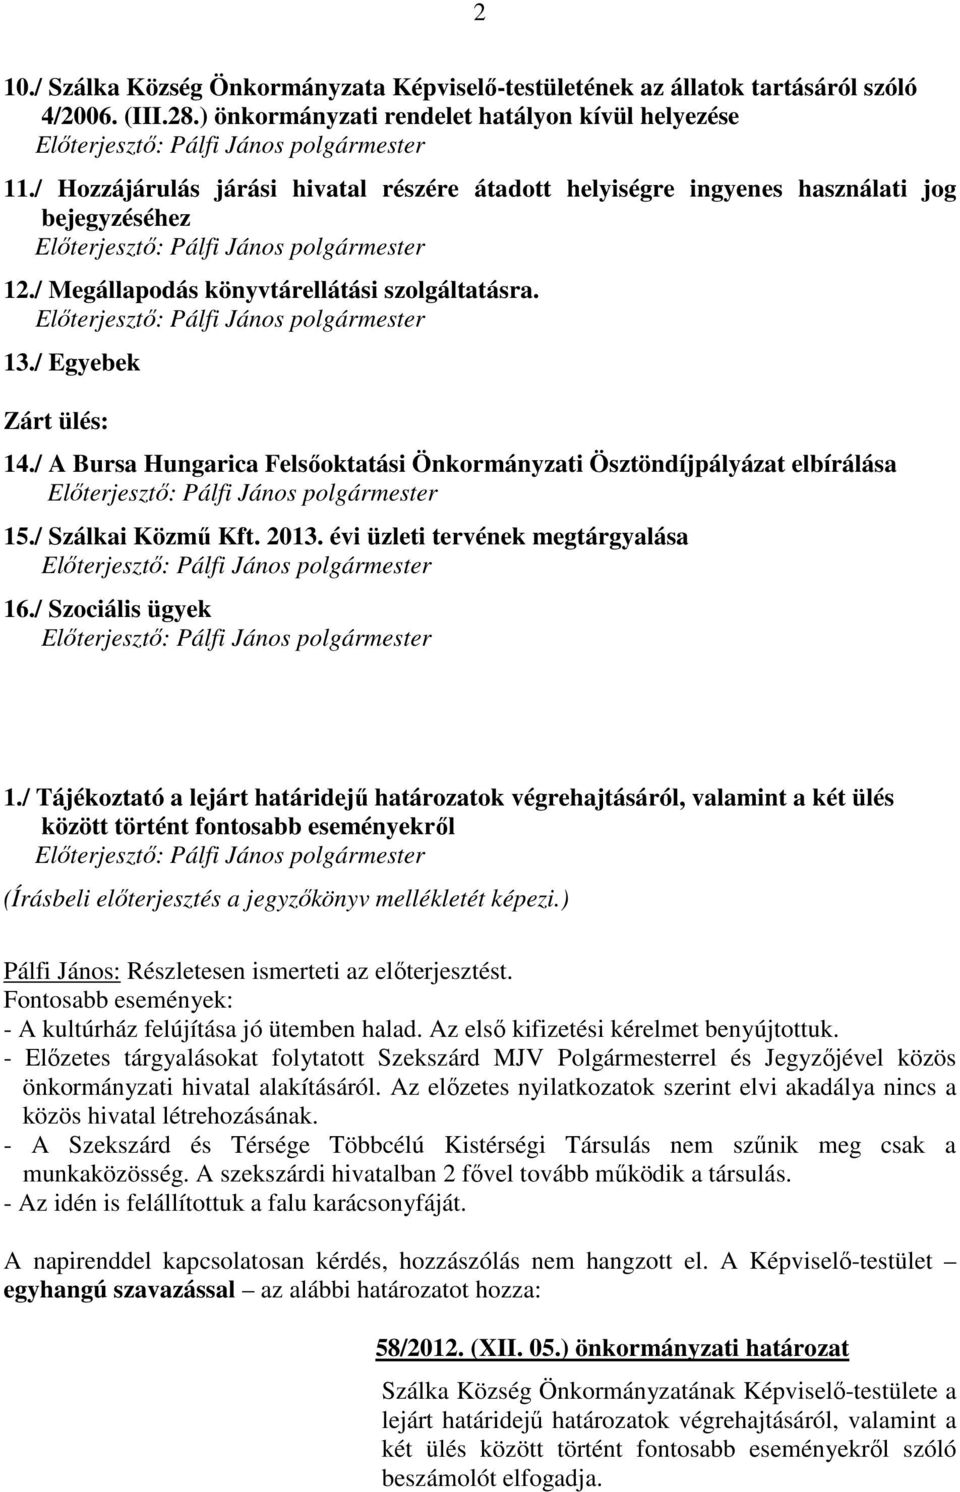 / A Bursa Hungarica Felsőoktatási Önkormányzati Ösztöndíjpályázat elbírálása 15./ Szálkai Közmű Kft. 2013. évi üzleti tervének megtárgyalása 16./ Szociális ügyek 1.